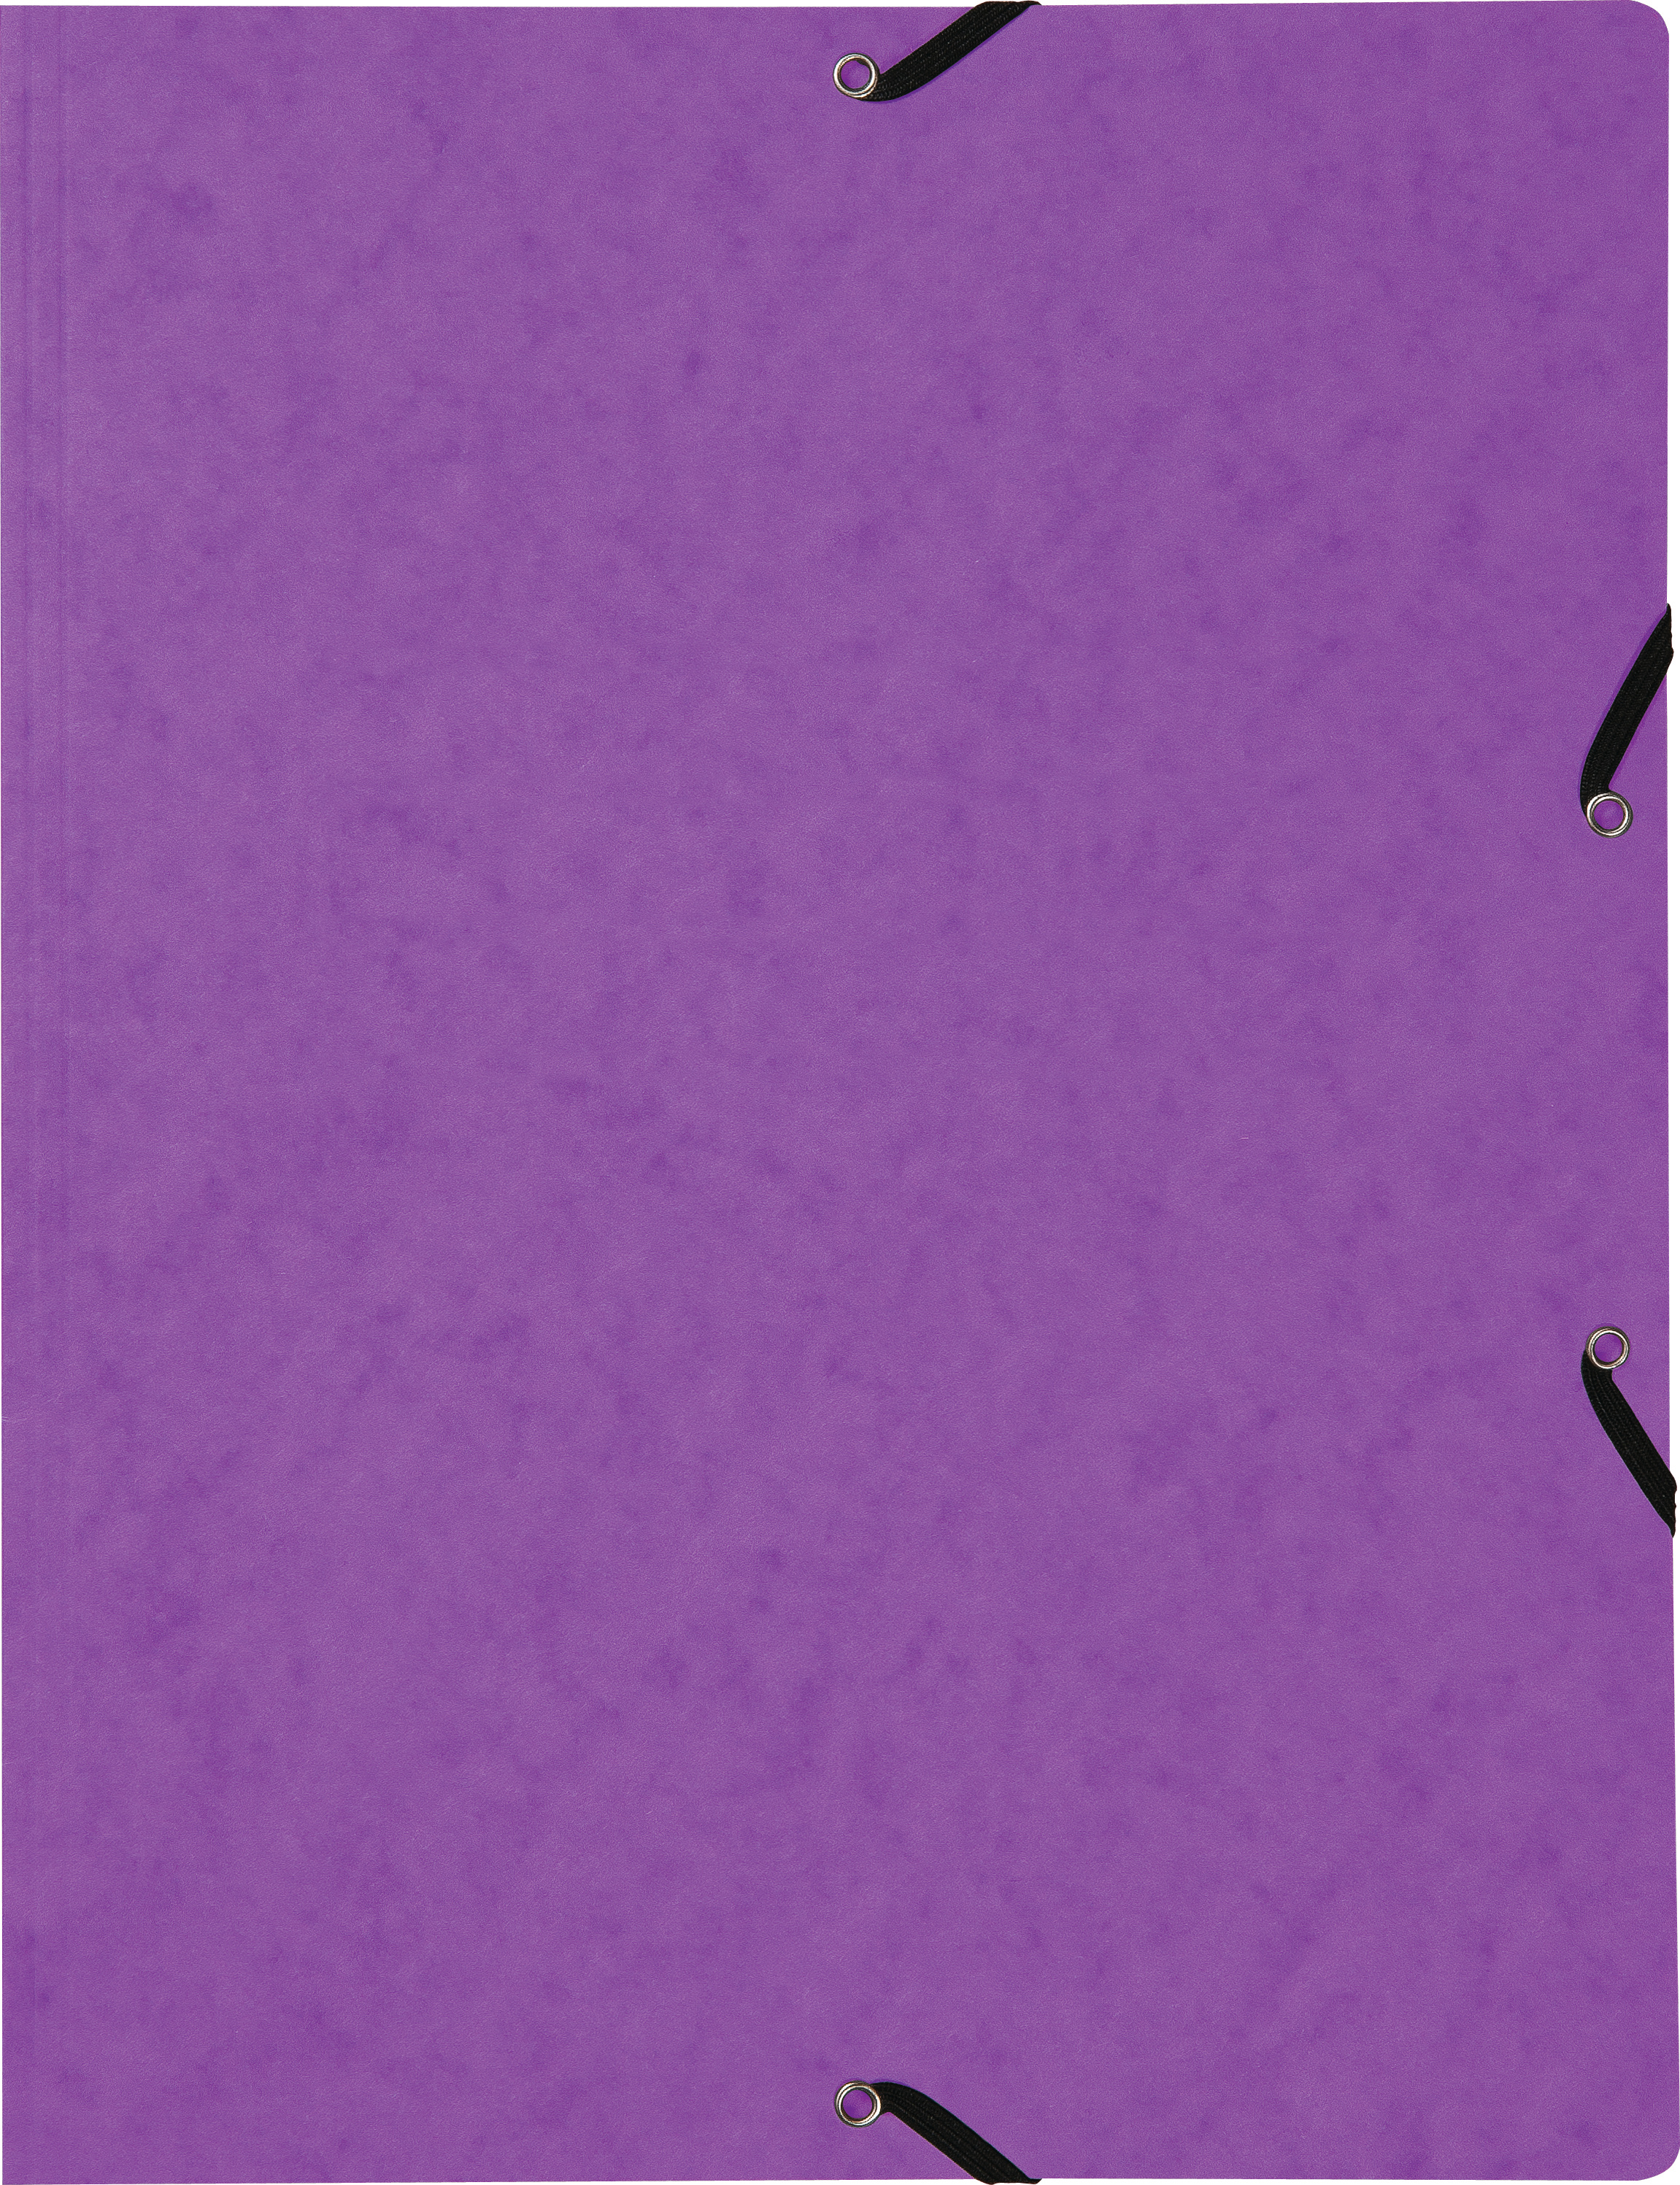 BIELLA Dossier ferm. Élastique A4 17840142U violet, 355gm2 200 flls.